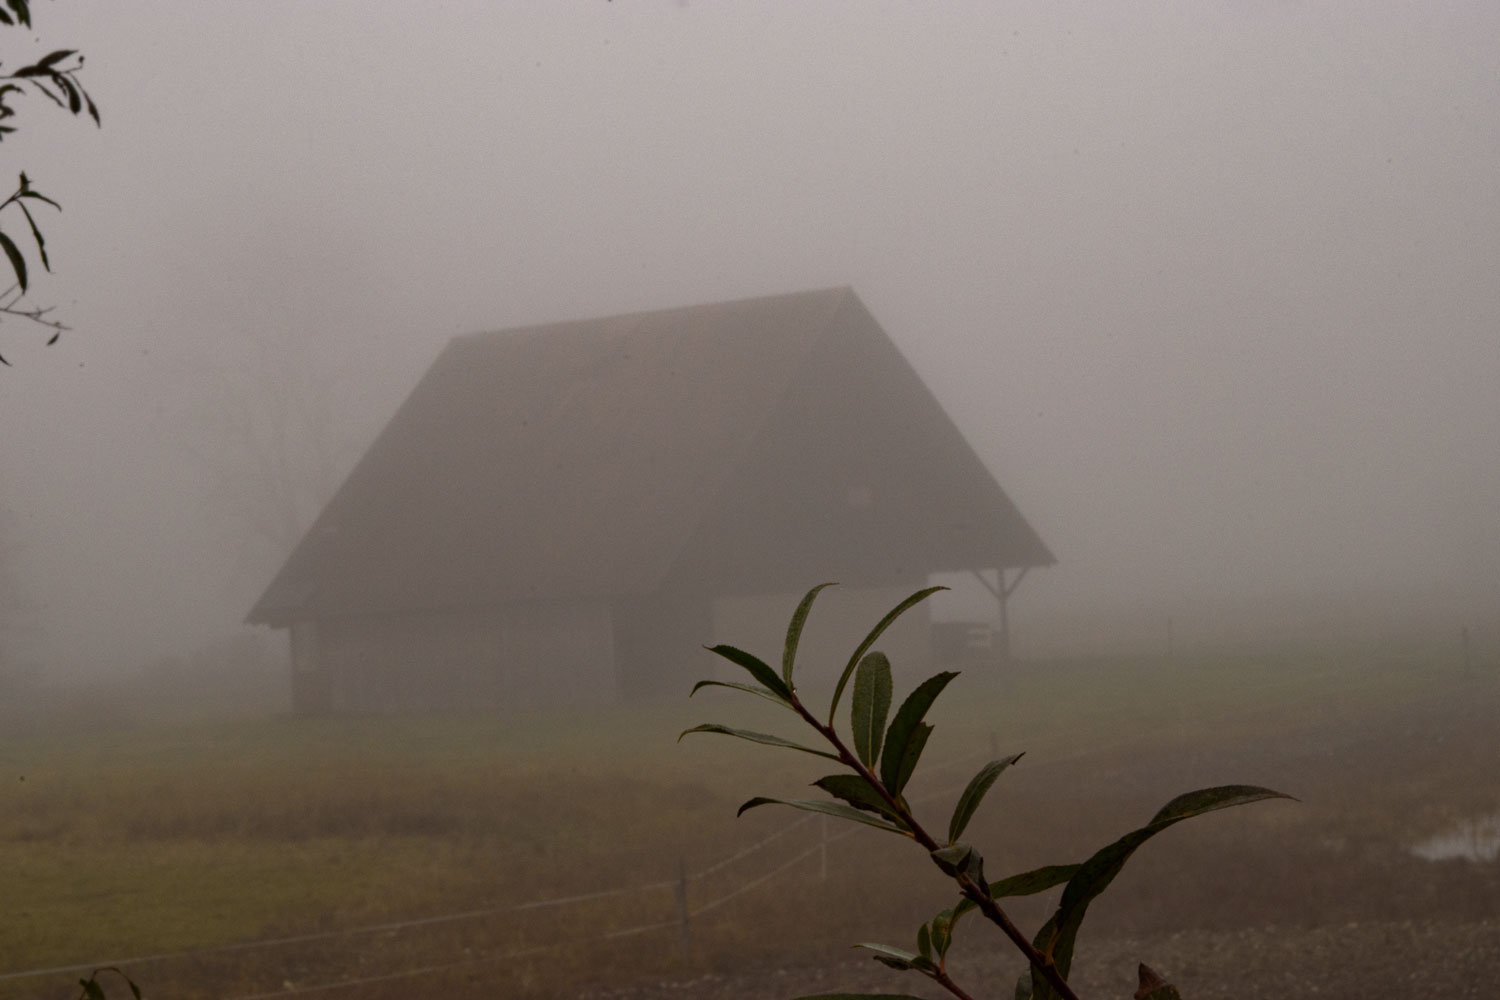 das Haus im Nebel